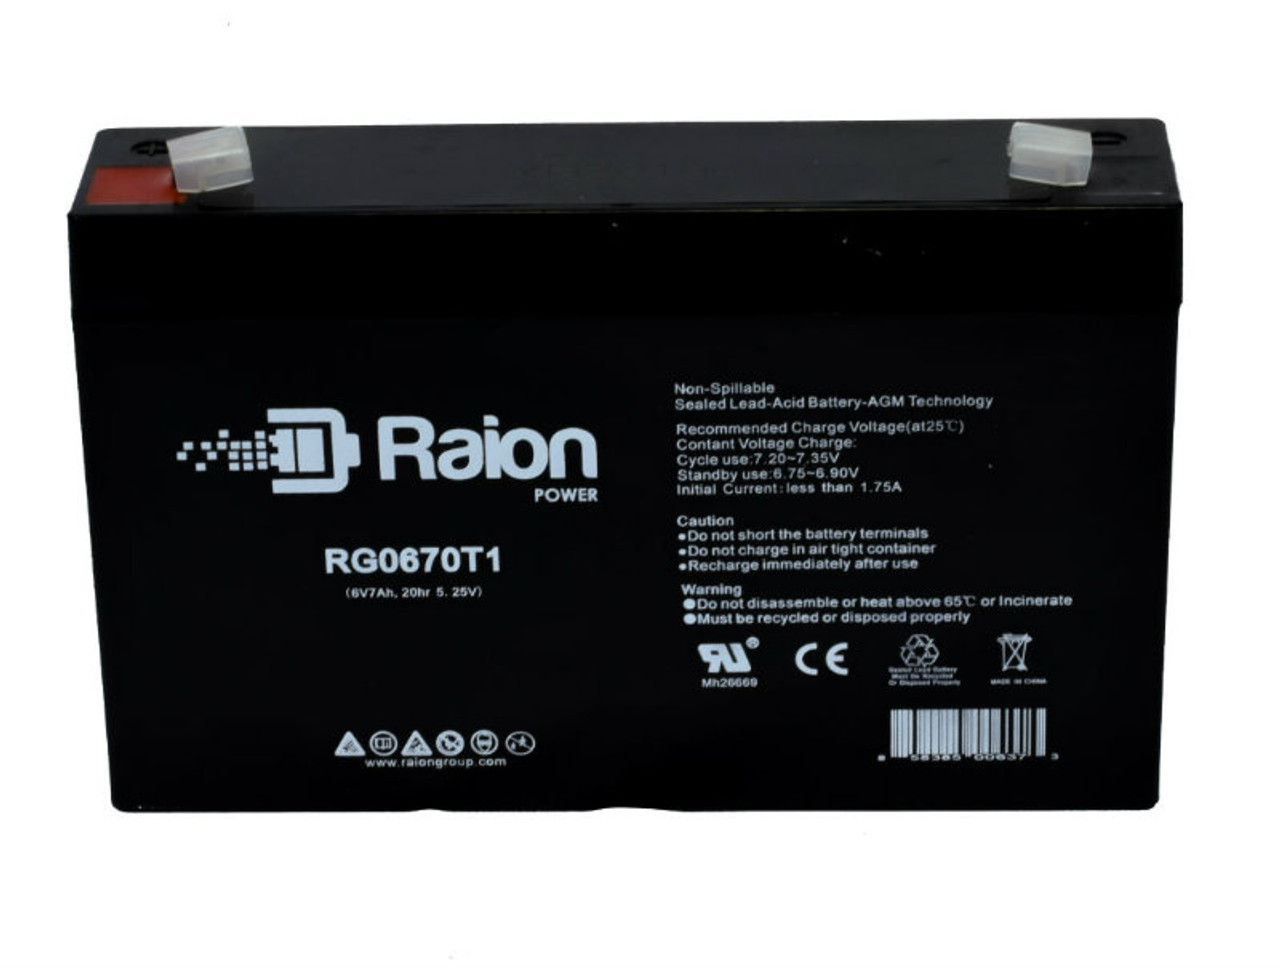 Raion Power RG0670T1 SLA Battery for HKbil 3FM7.0 OEM Battery